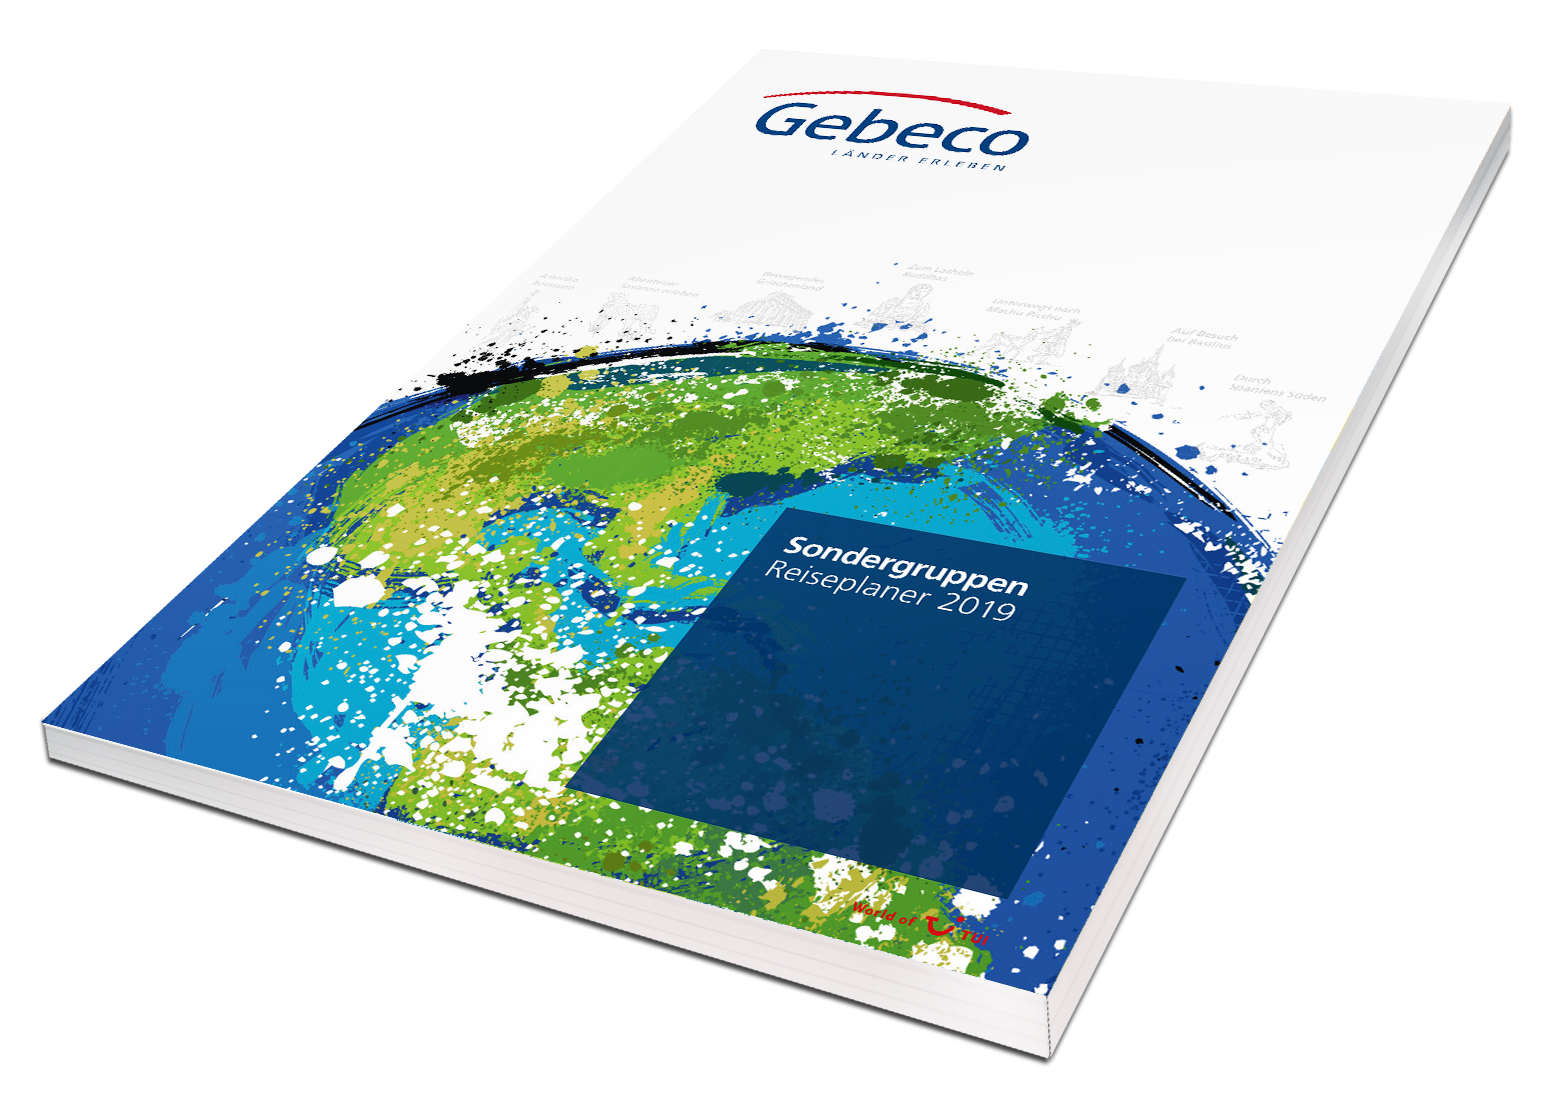 Gebeco veröffentlicht den bisher umfangreichsten Sondergruppen-Katalog. Auf 242 Seiten finden sich über 150 Reisen mit Planungssicherheit bis Ende 2019.